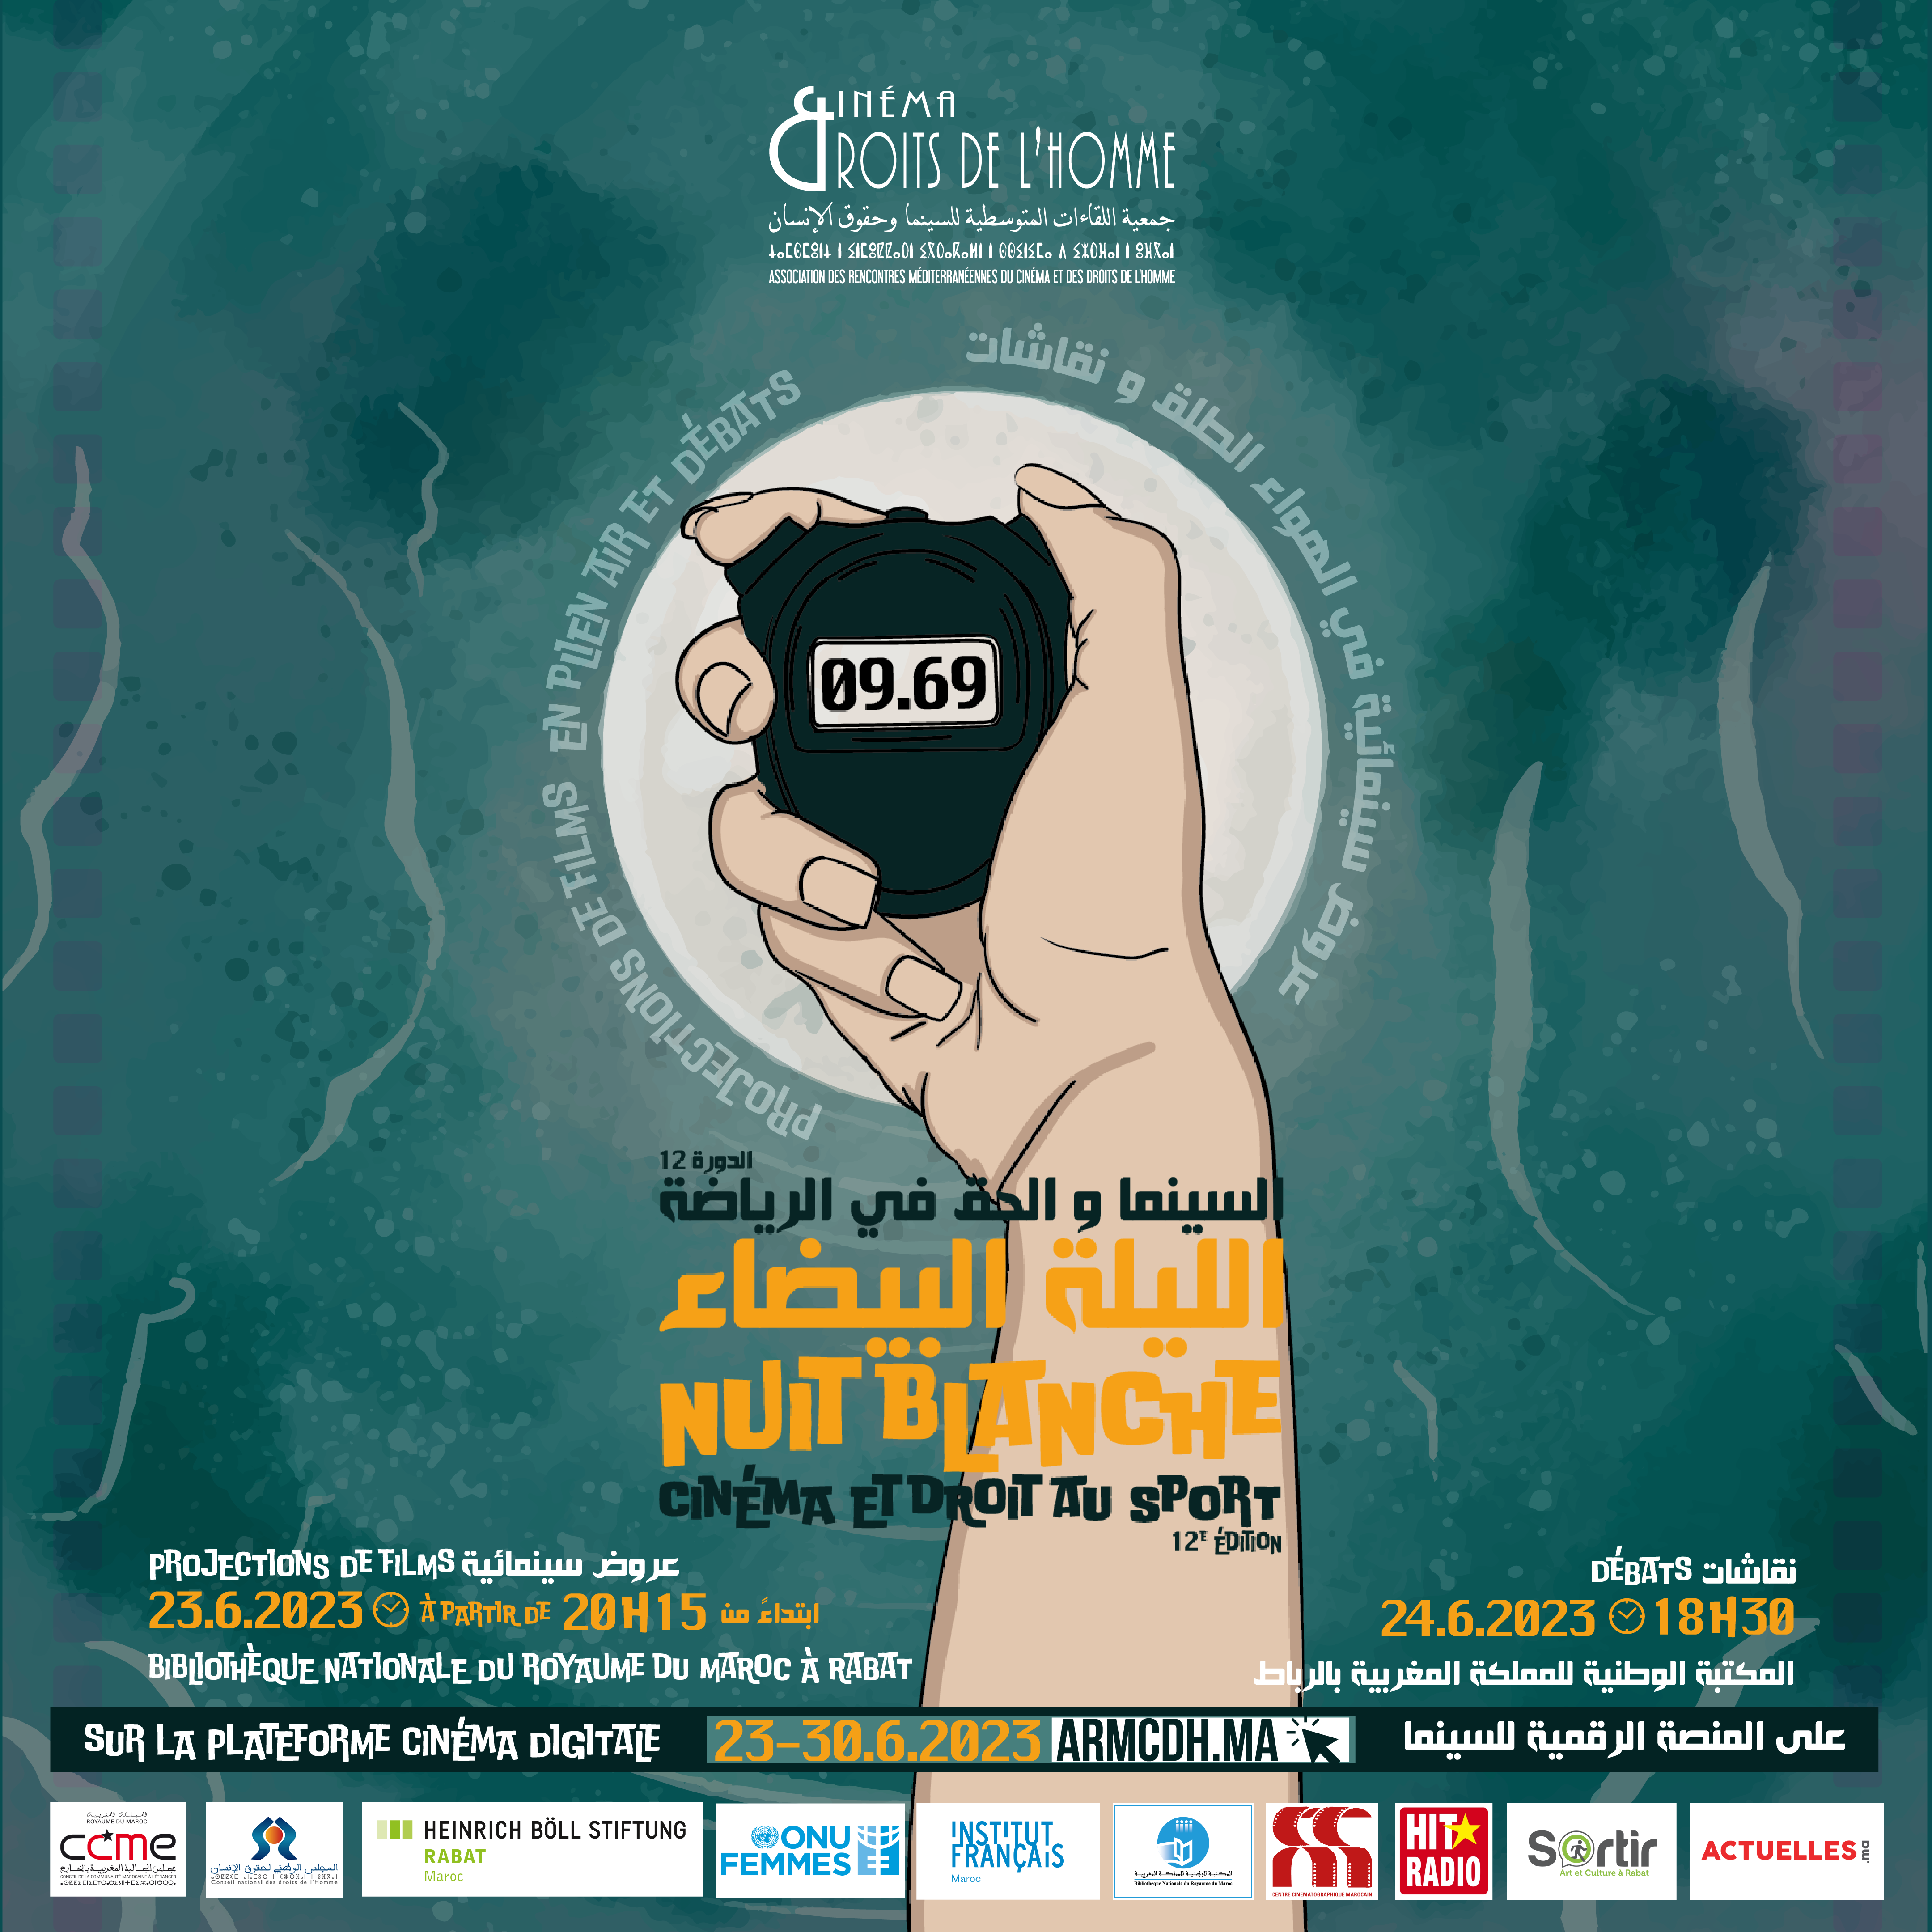 12ème édition de la nuit blanche : ‘cinéma et droit au sport’  A Rabat : 23 et 24 juin 2023 à la bibliothèque nationale du Royaume du Maroc